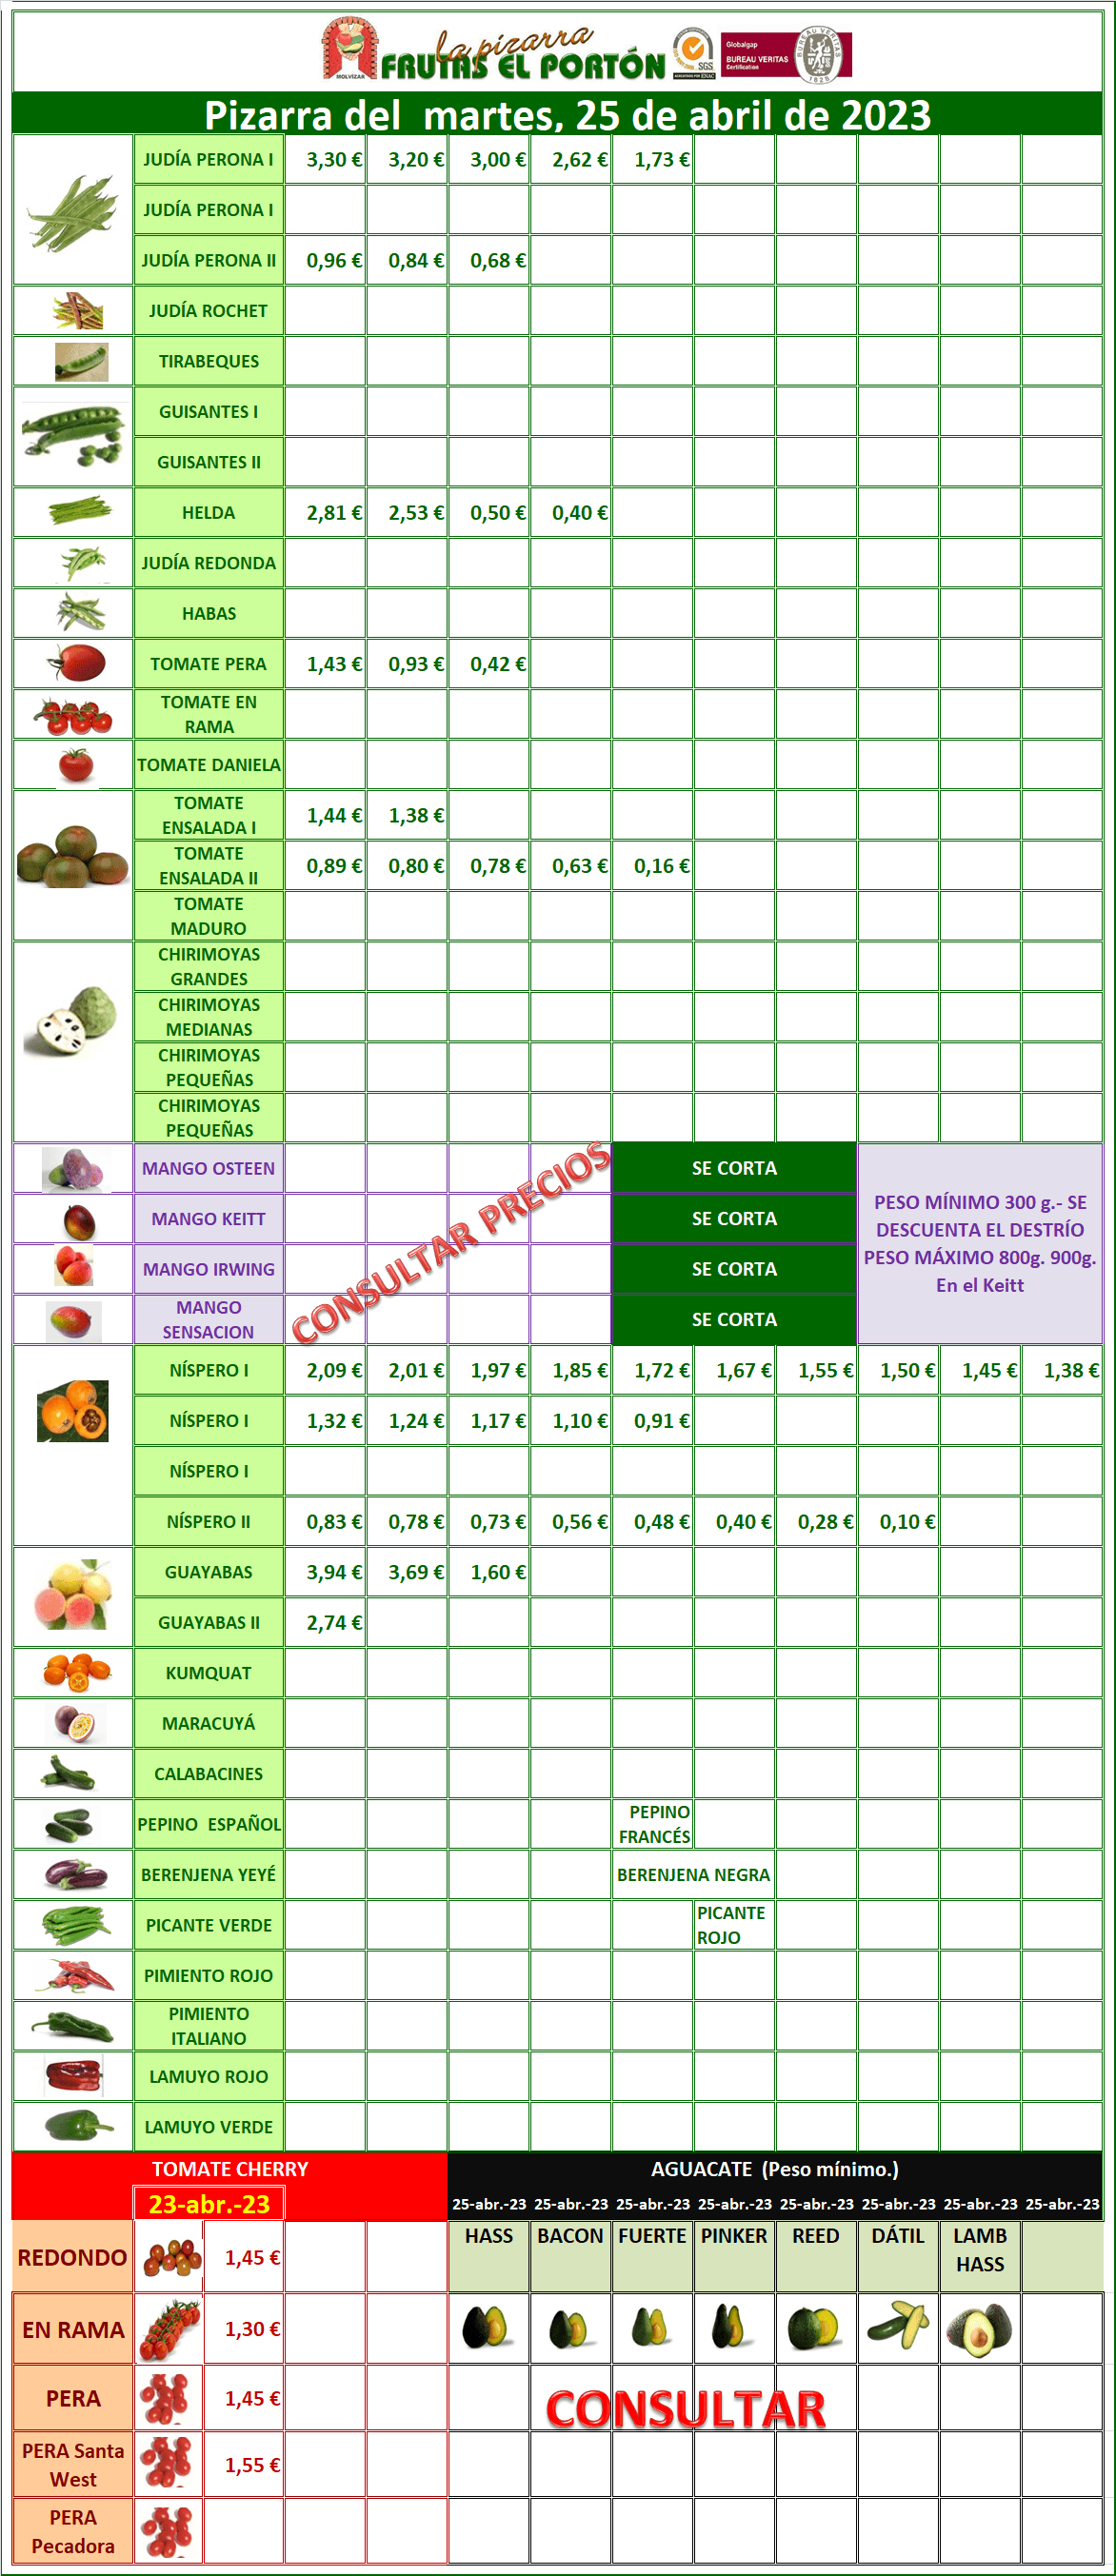 Subasta hortofrutícola Frutas El Portón 25 de abril 2023